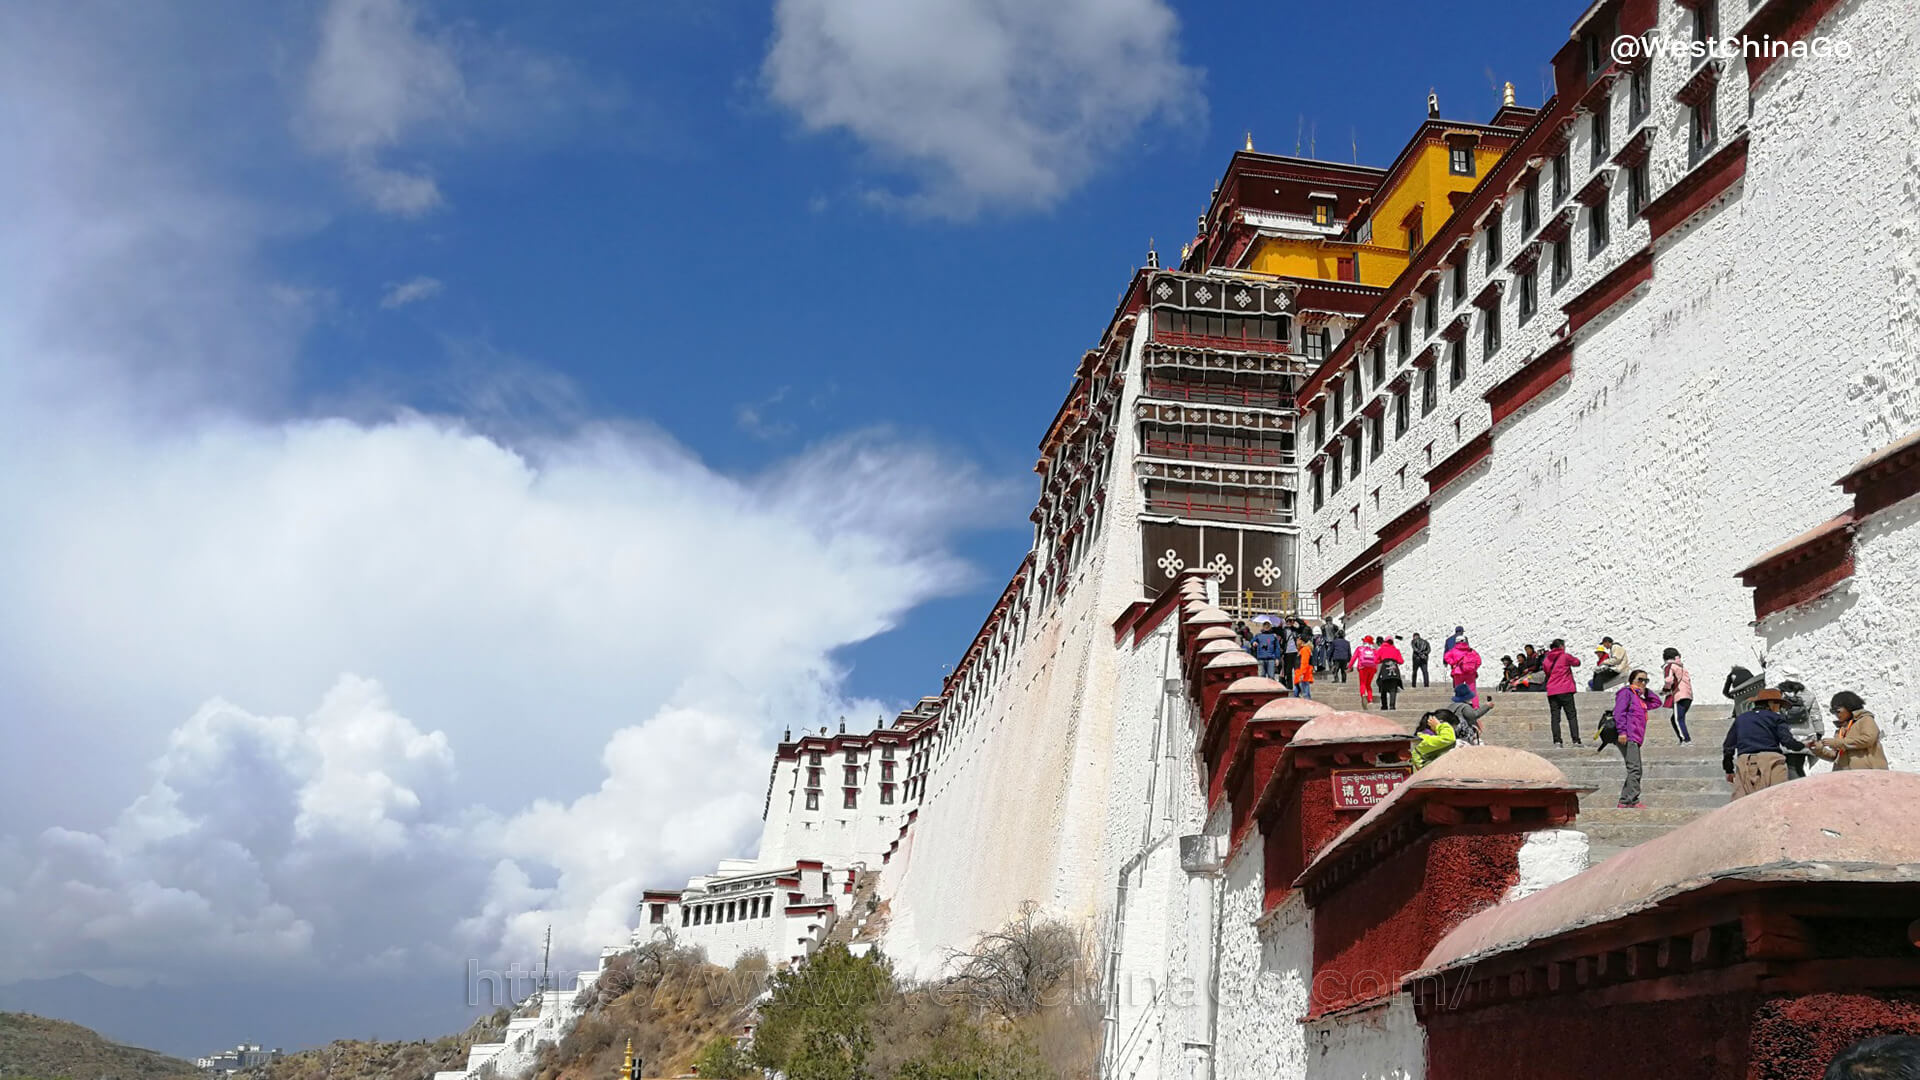 Tibet, Lhasa, Chengdu tours, Panda volunteer program, 1920x1080 Full HD Desktop